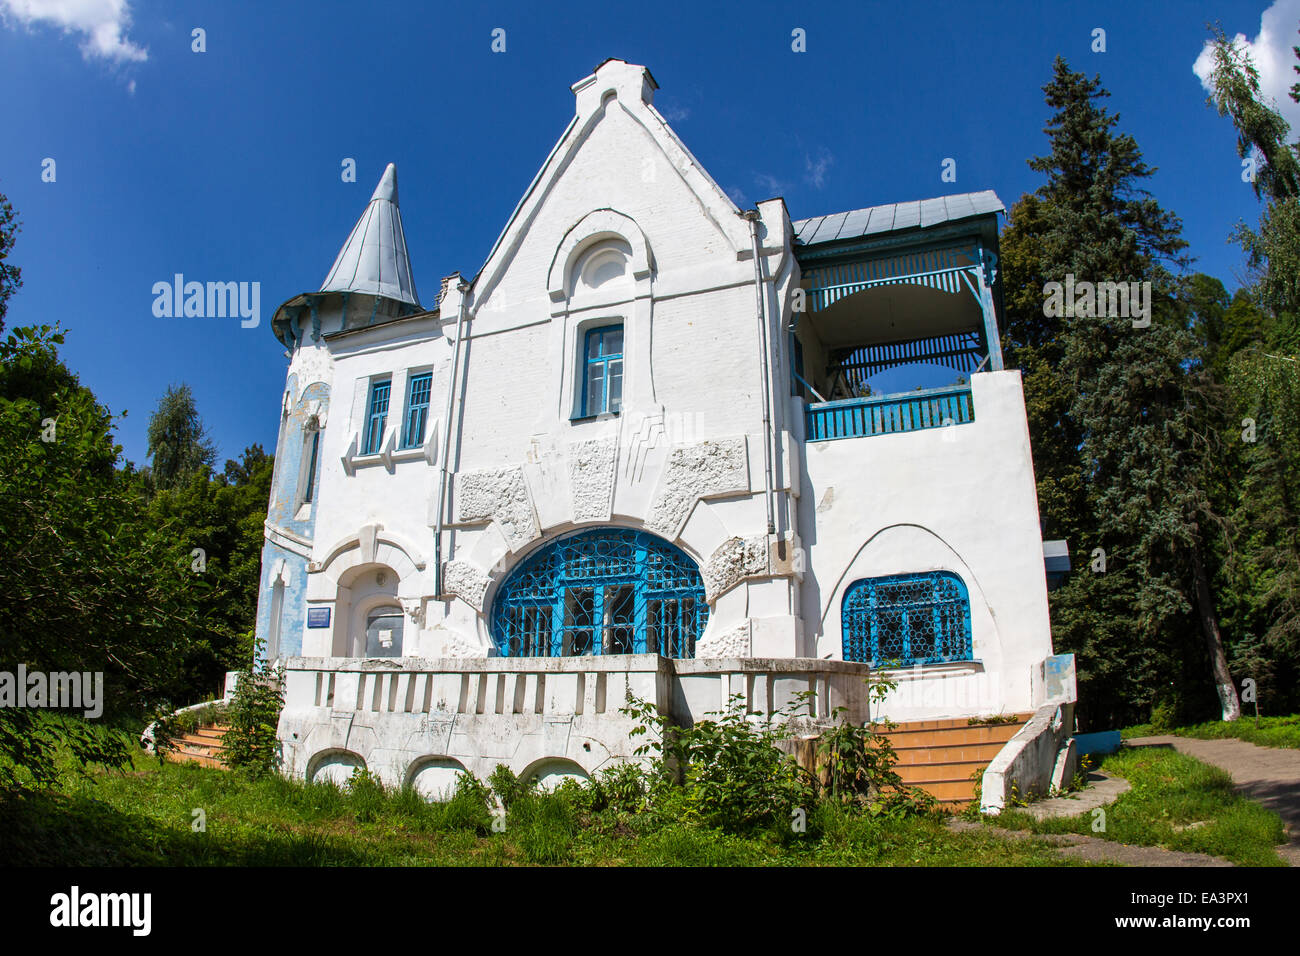 Old house, Kaluga region, Russia Stock Photo